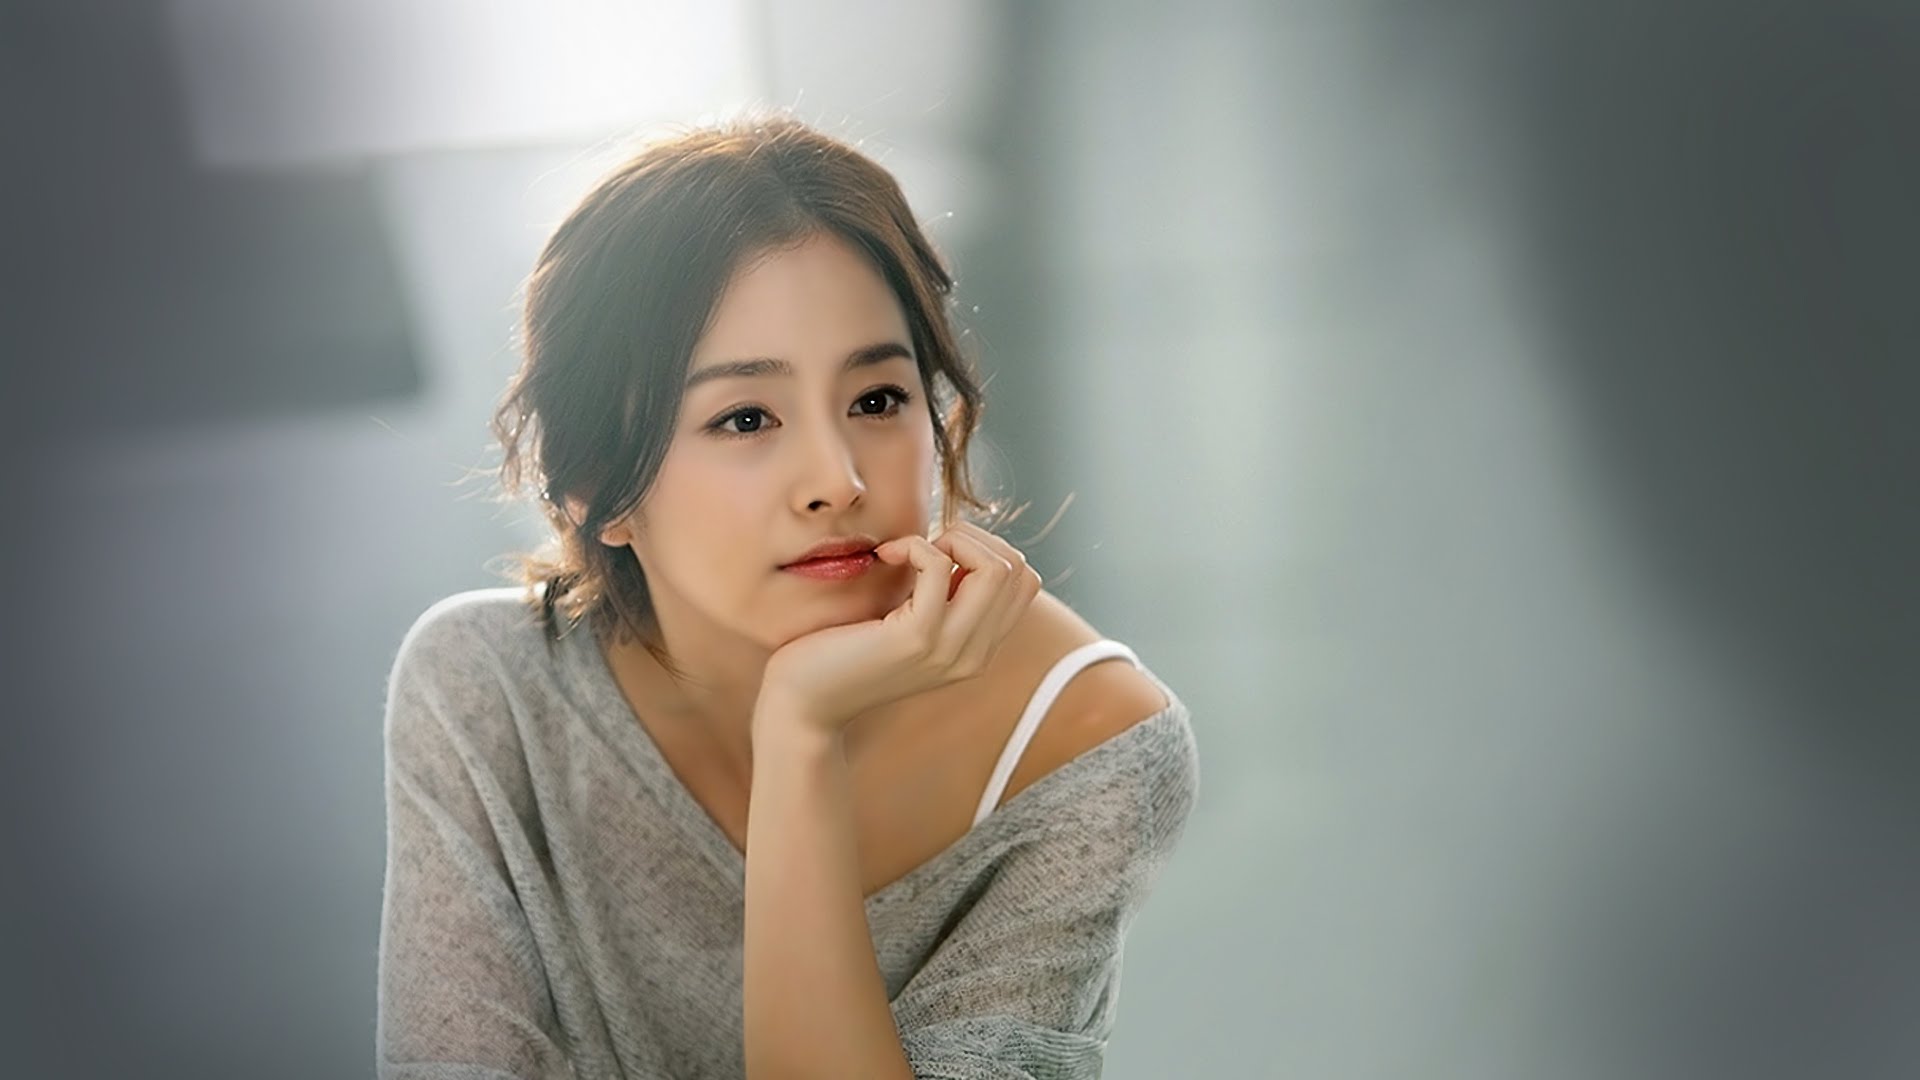 Kim Tae Hee, ngôi sao trẻ tuổi của màn ảnh Hàn Quốc, đã trở thành một biểu tượng phim chiếu rạp với nhiều tác phẩm nổi tiếng. Xem hình ảnh của Kim Tae Hee chắc chắn sẽ khiến bạn cảm thấy thích thú và phấn khích hơn bao giờ hết.